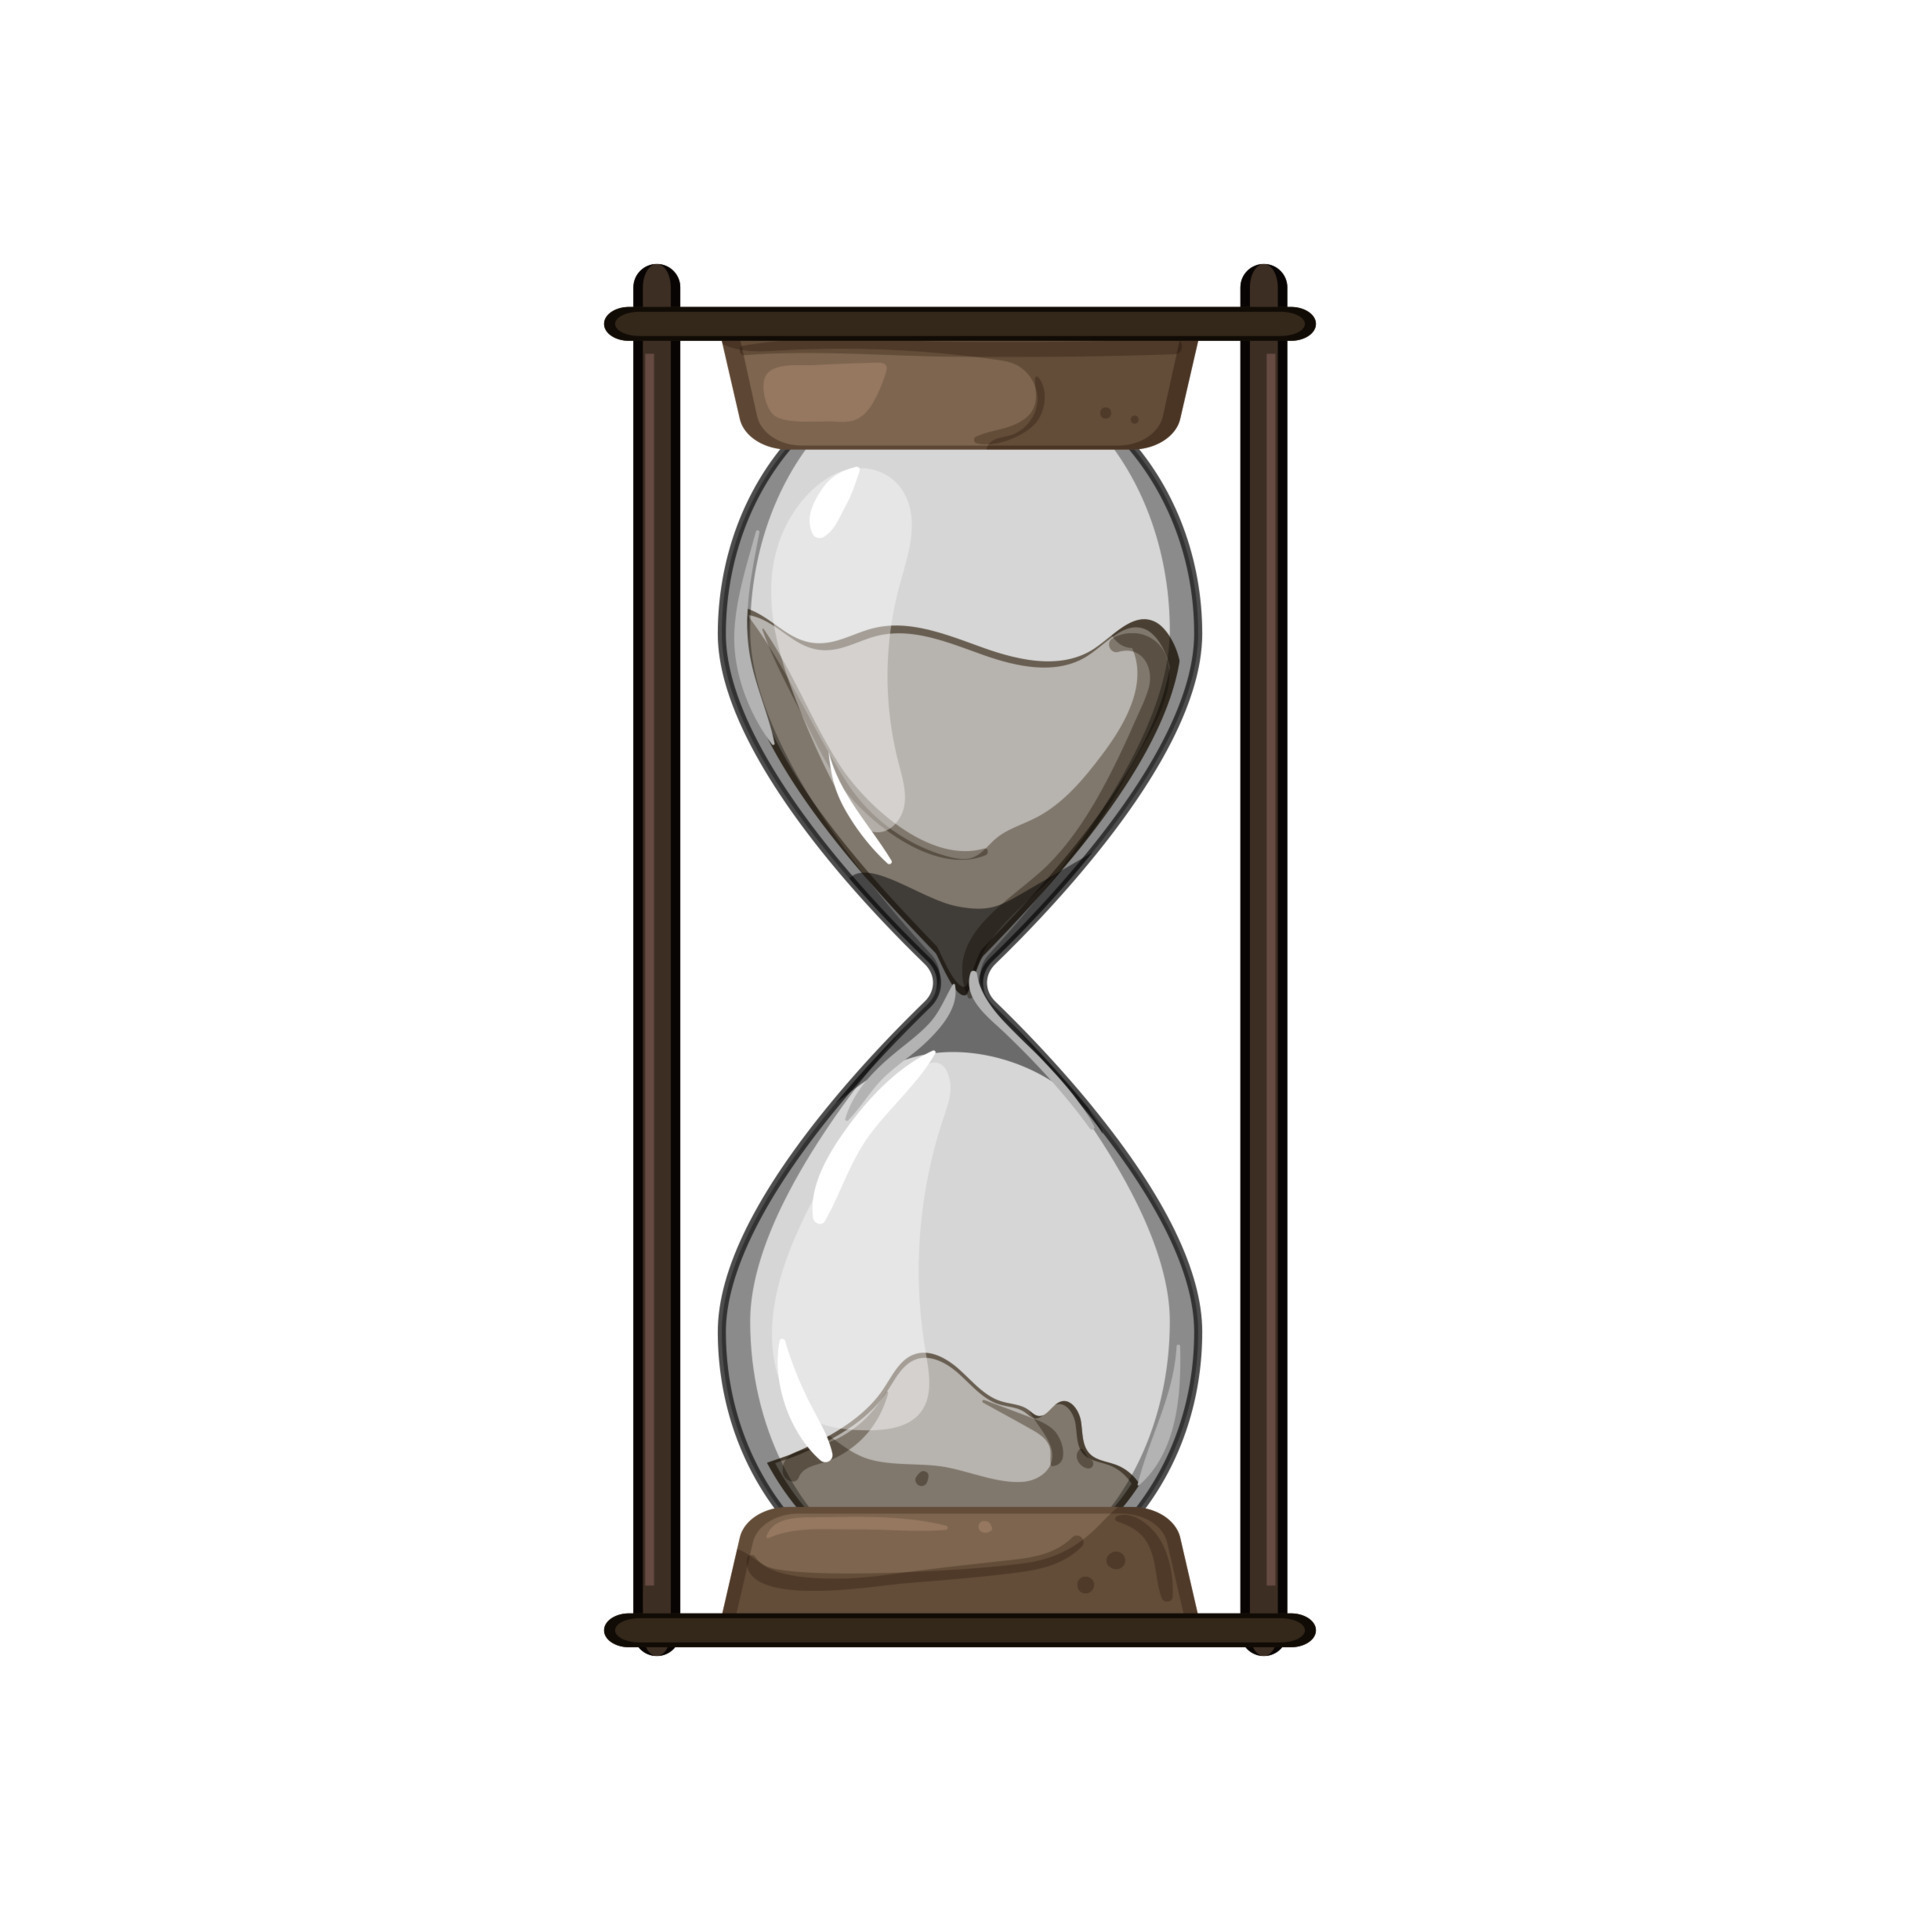 hourglass cartoon vector illustration 17590172 Vector Vecteezy